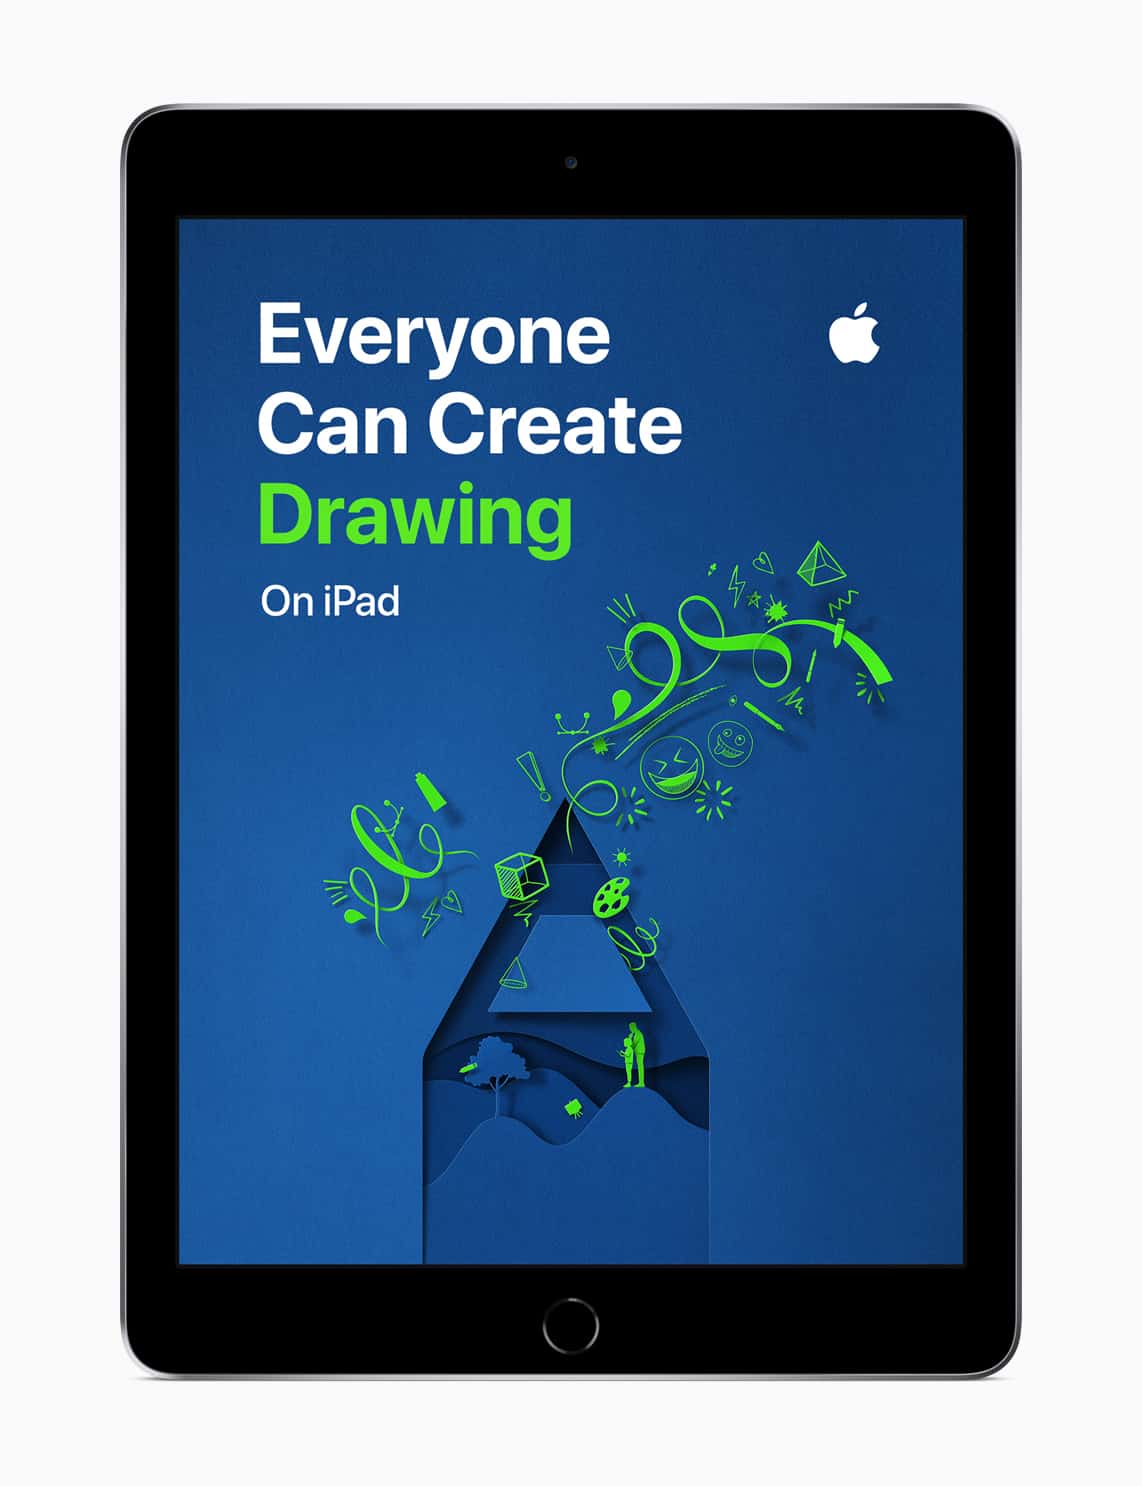 Apple iPad Everyone Can Create drawing screen 09262018